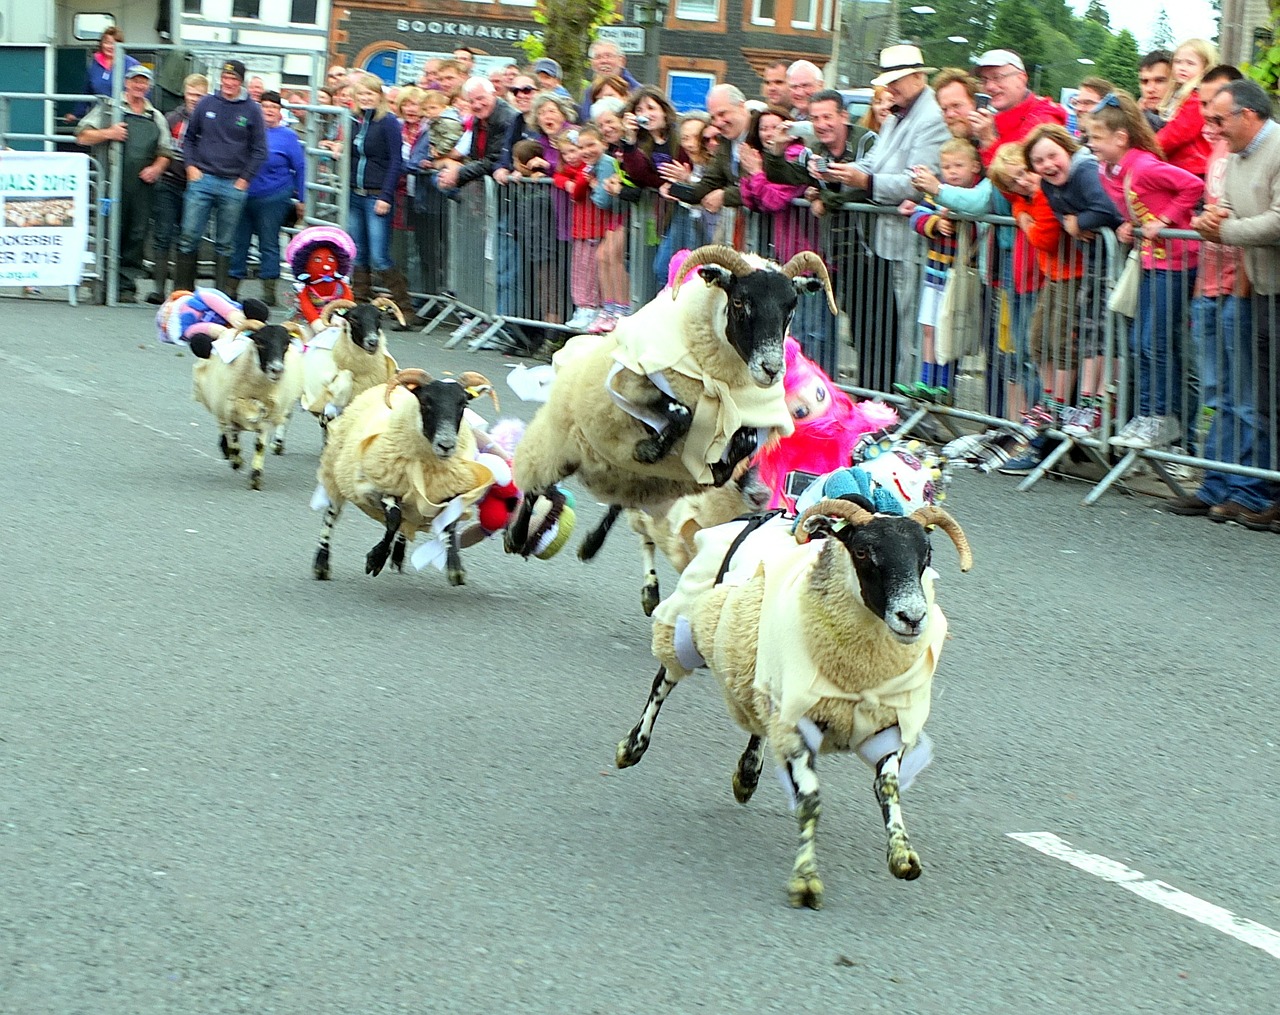 sheep race racing free photo